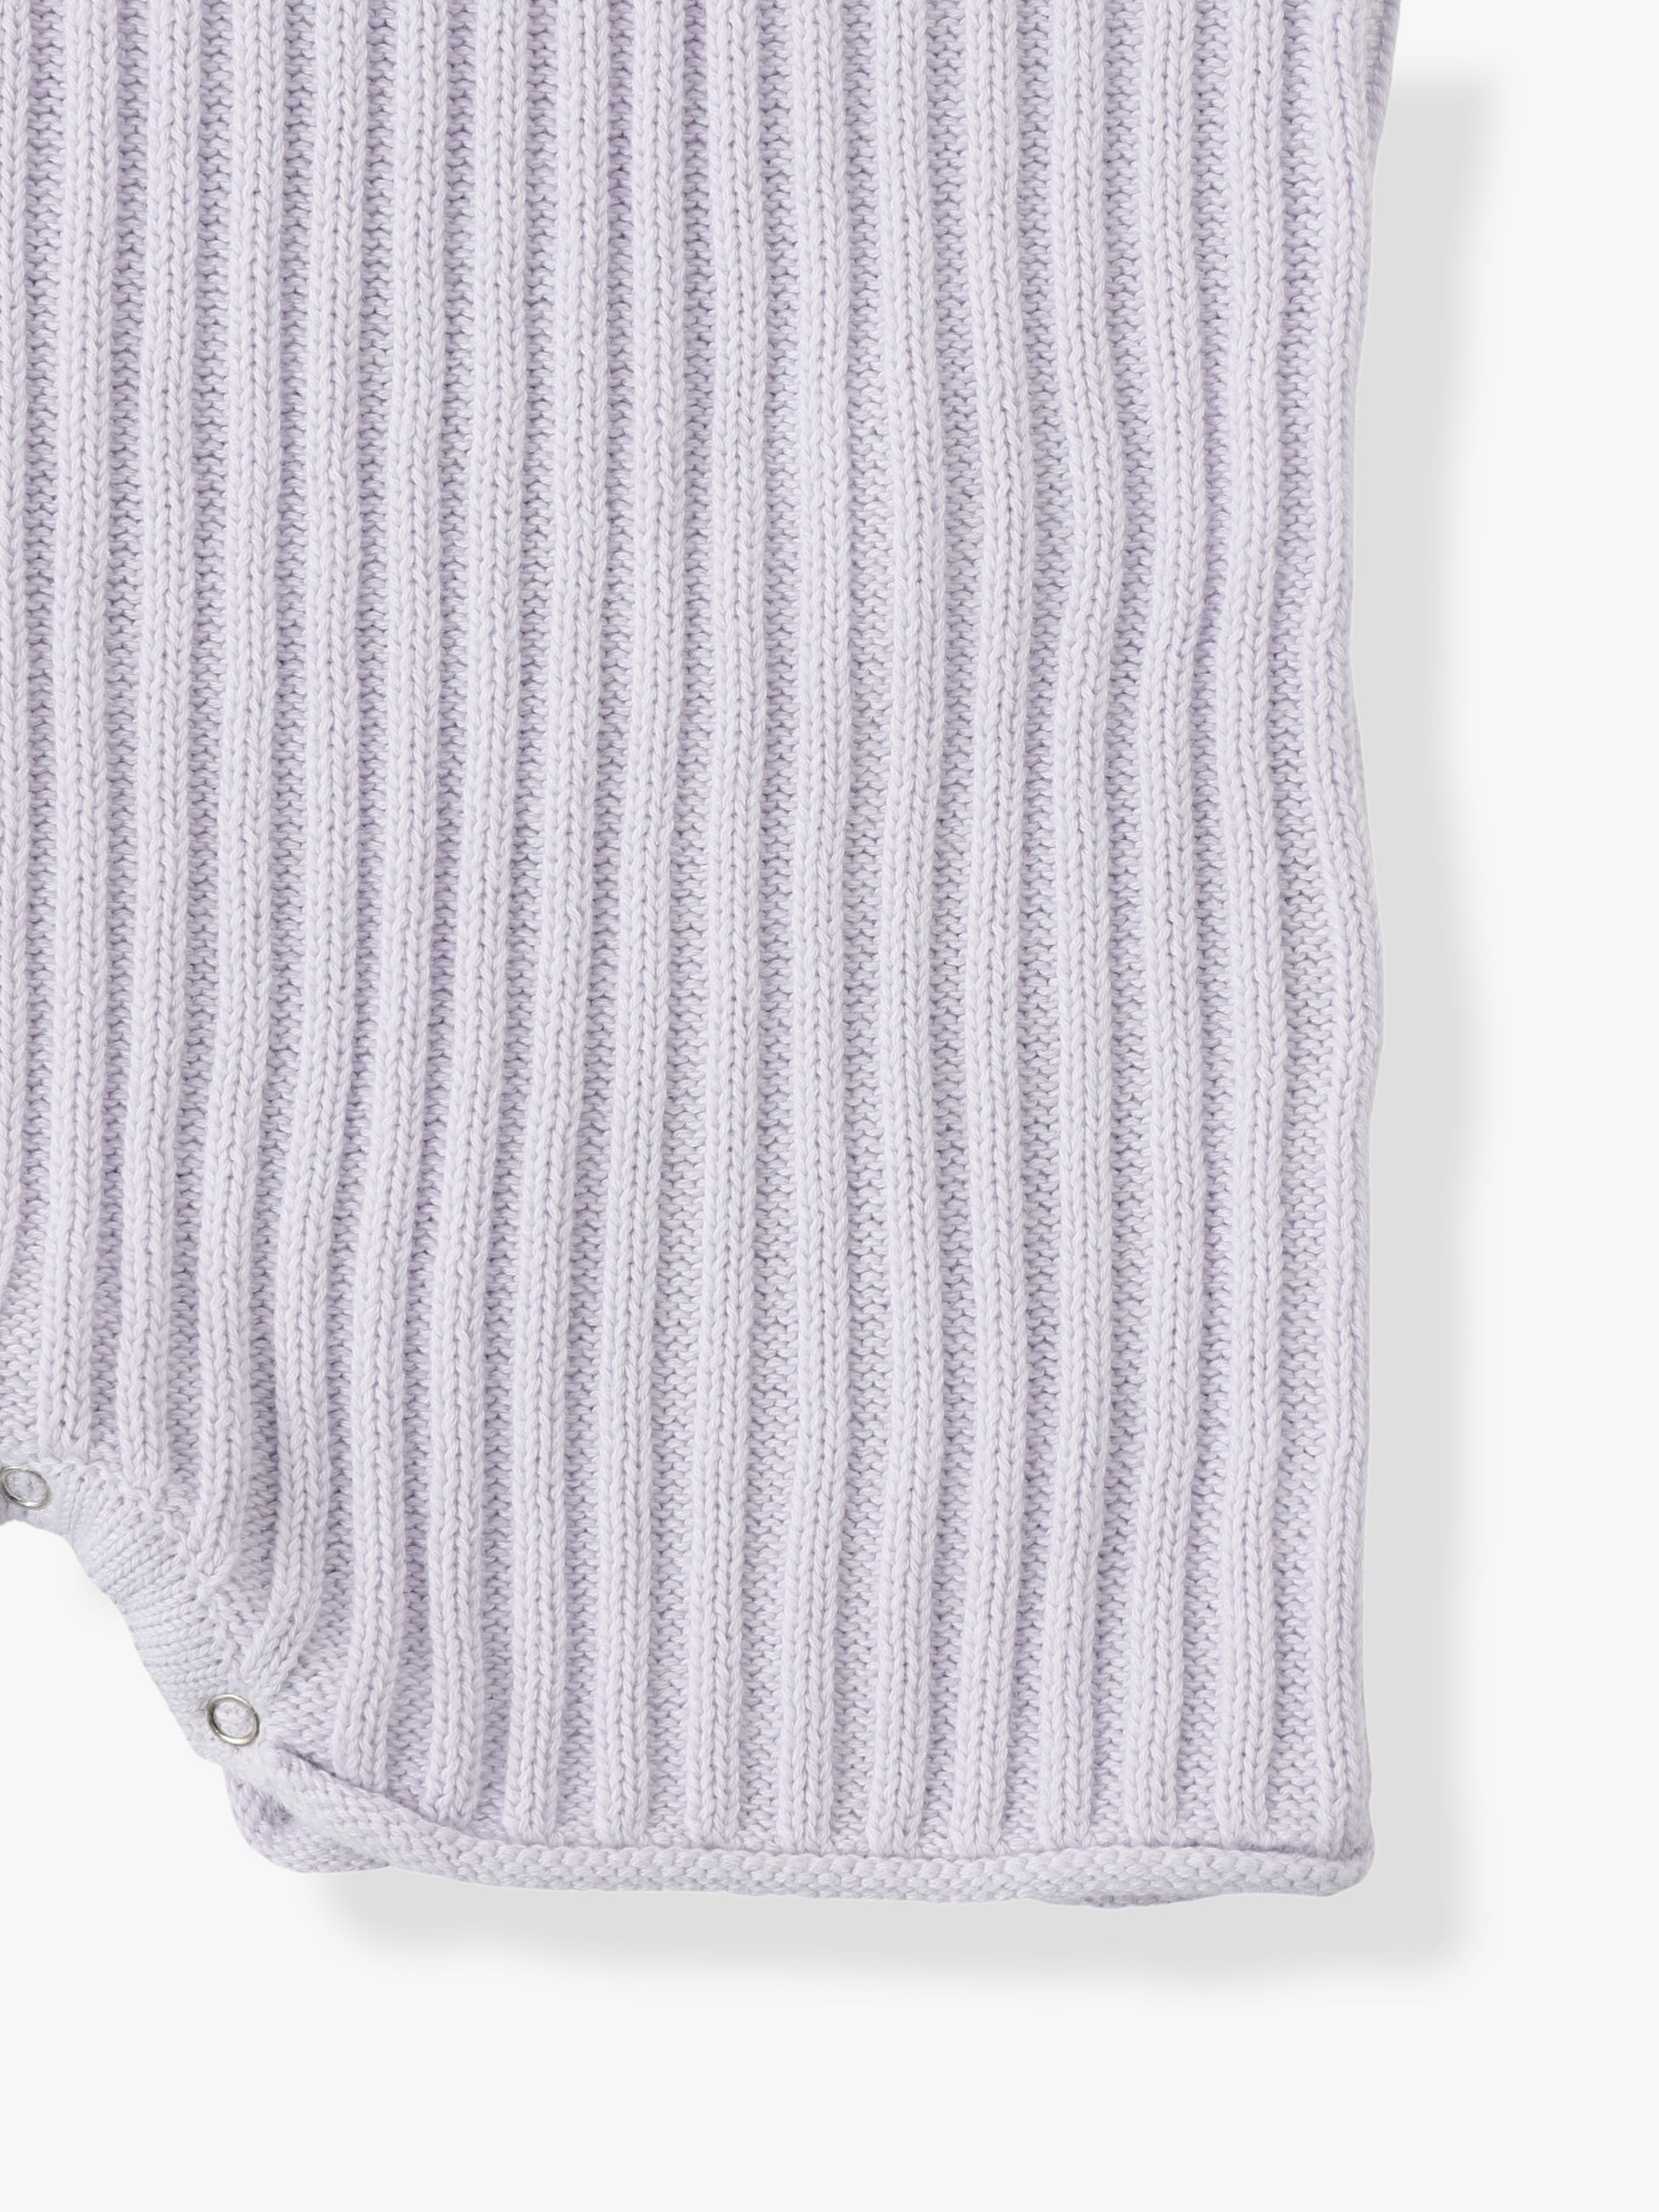 期間限定sale TEN x Ron Herman rib knit setup - ニット/セーター